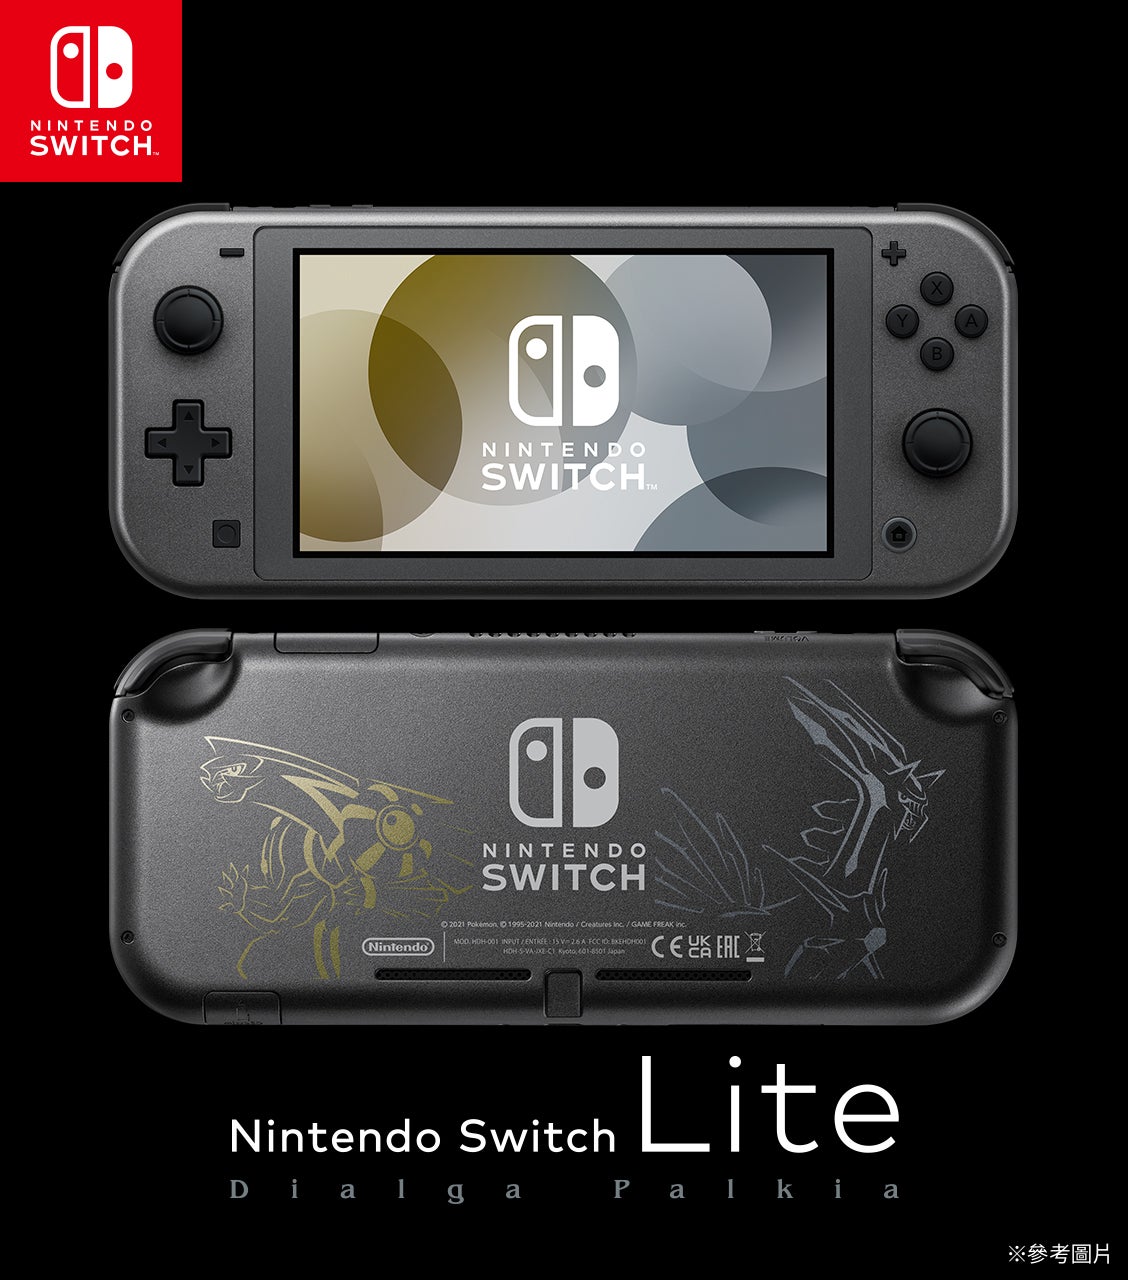 在金屬灰的主機上加入寶可夢設計手提專用的「Nintendo Switch Lite 帝